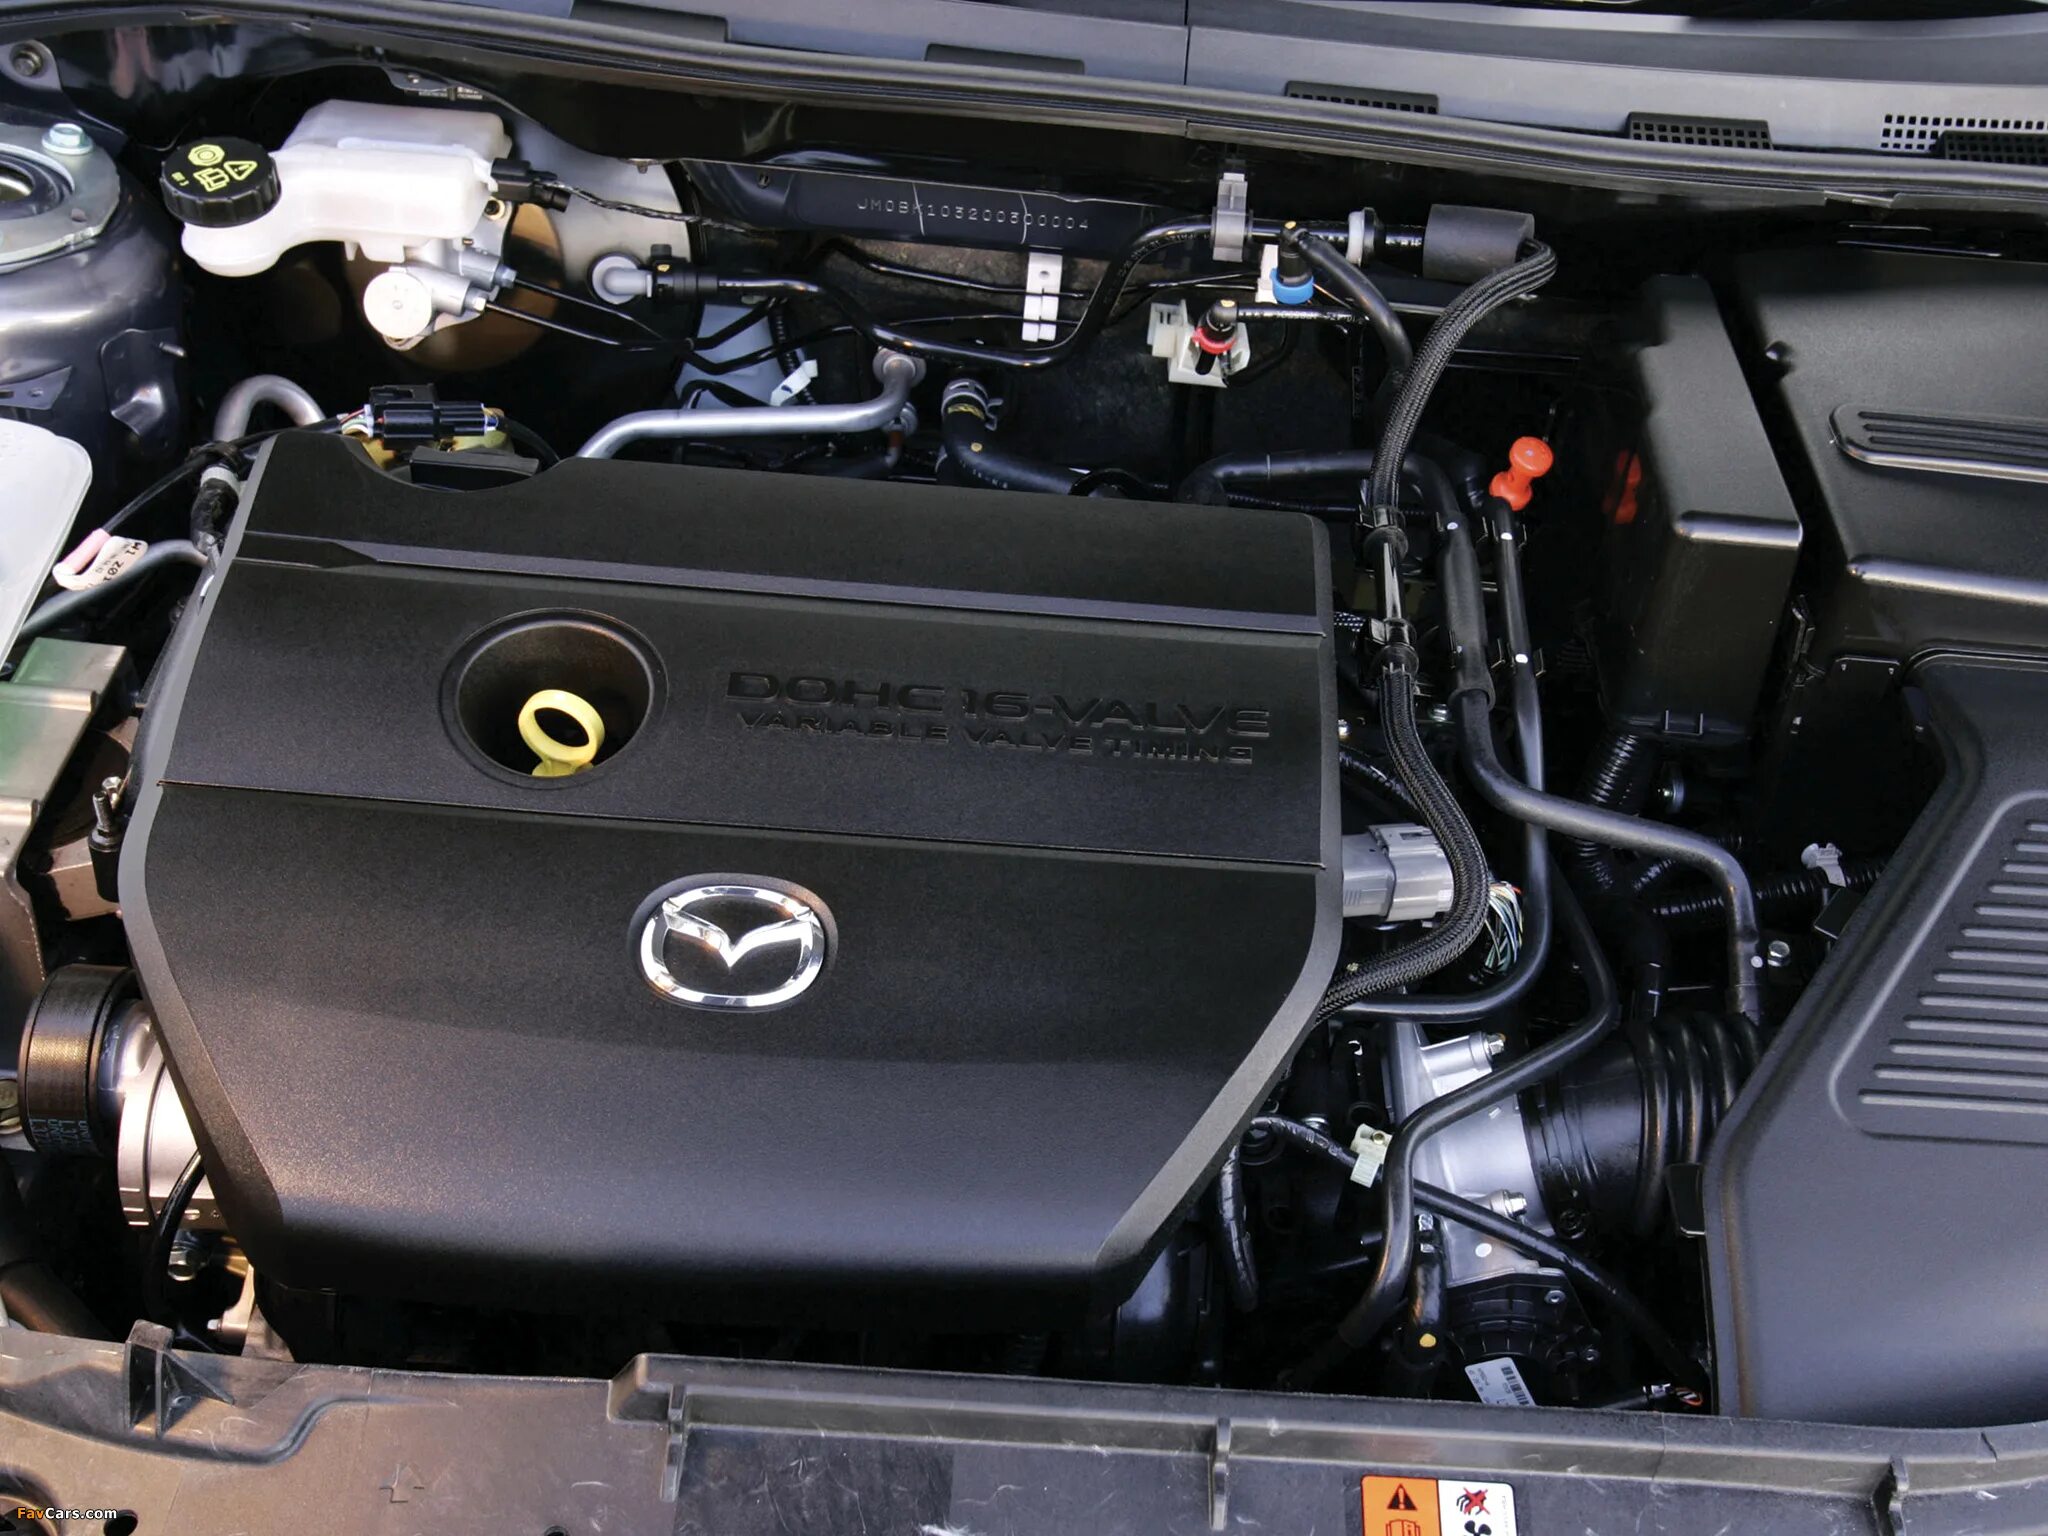 Двигатель Мазда 3. Под капотом Мазда 3 BK 1.6. Мазда 3 2006 двигатель. Mazda 3 BK 2.0 под капотом. Мазда 3 масло в двигатель 1.6